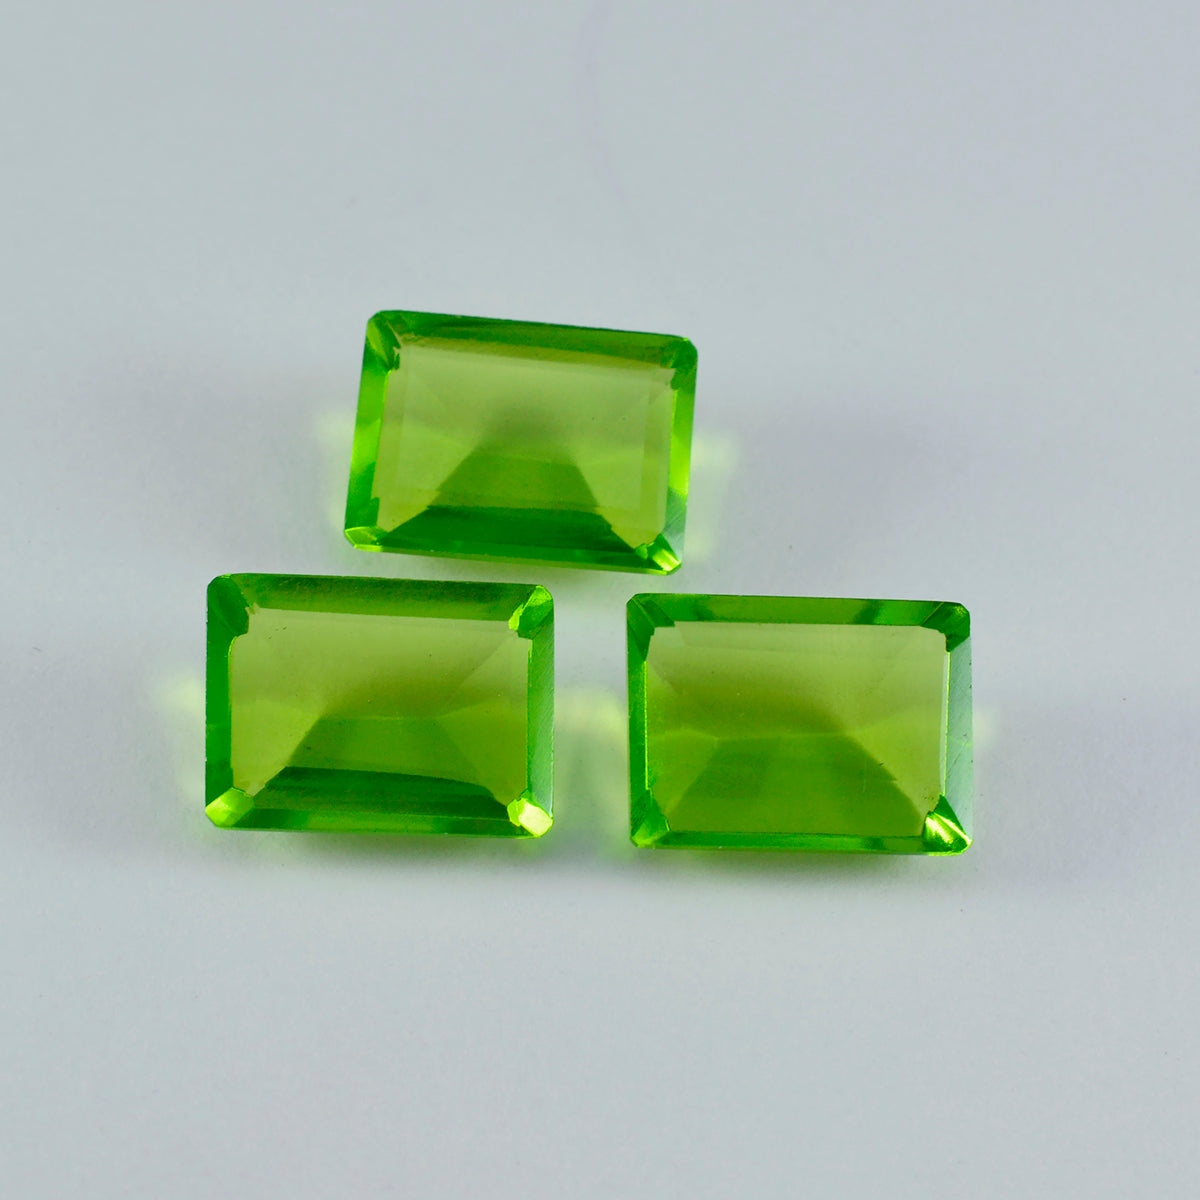 riyogems 1 шт. зеленый перидот cz граненый 10x14 мм восьмиугольная форма красивый качественный свободный драгоценный камень